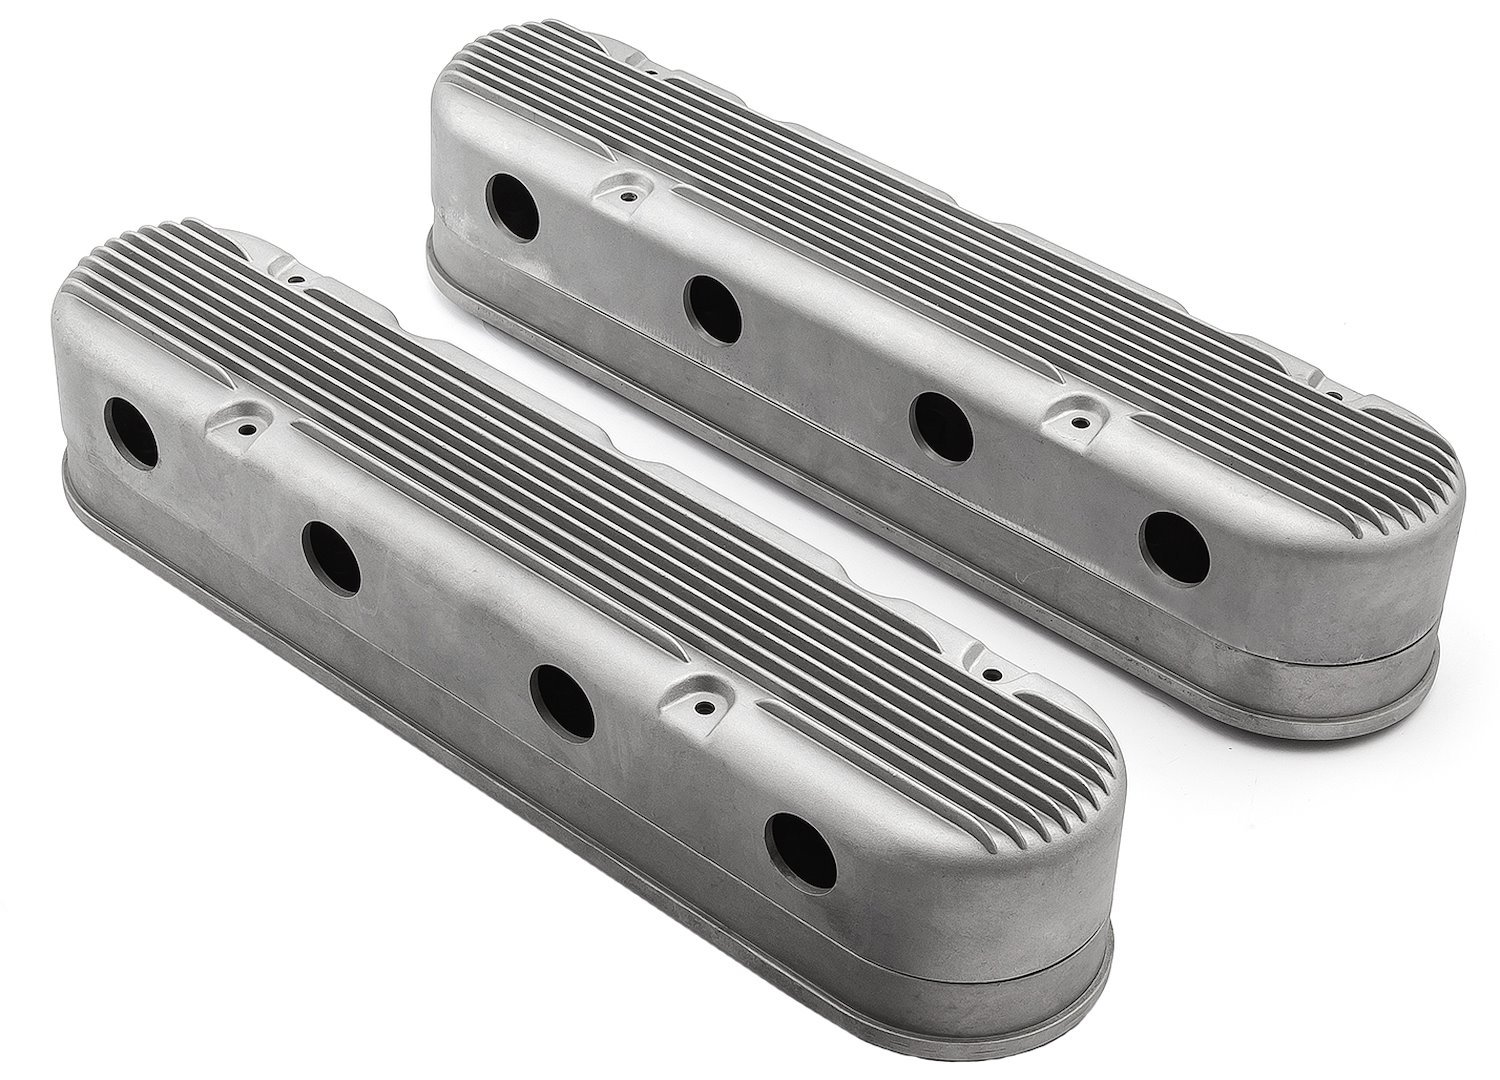 2-Piece Hidden-Coil Aluminum Valve Covers Chevy LS1/LS2/LS6, LS3, and LS7 - Satin